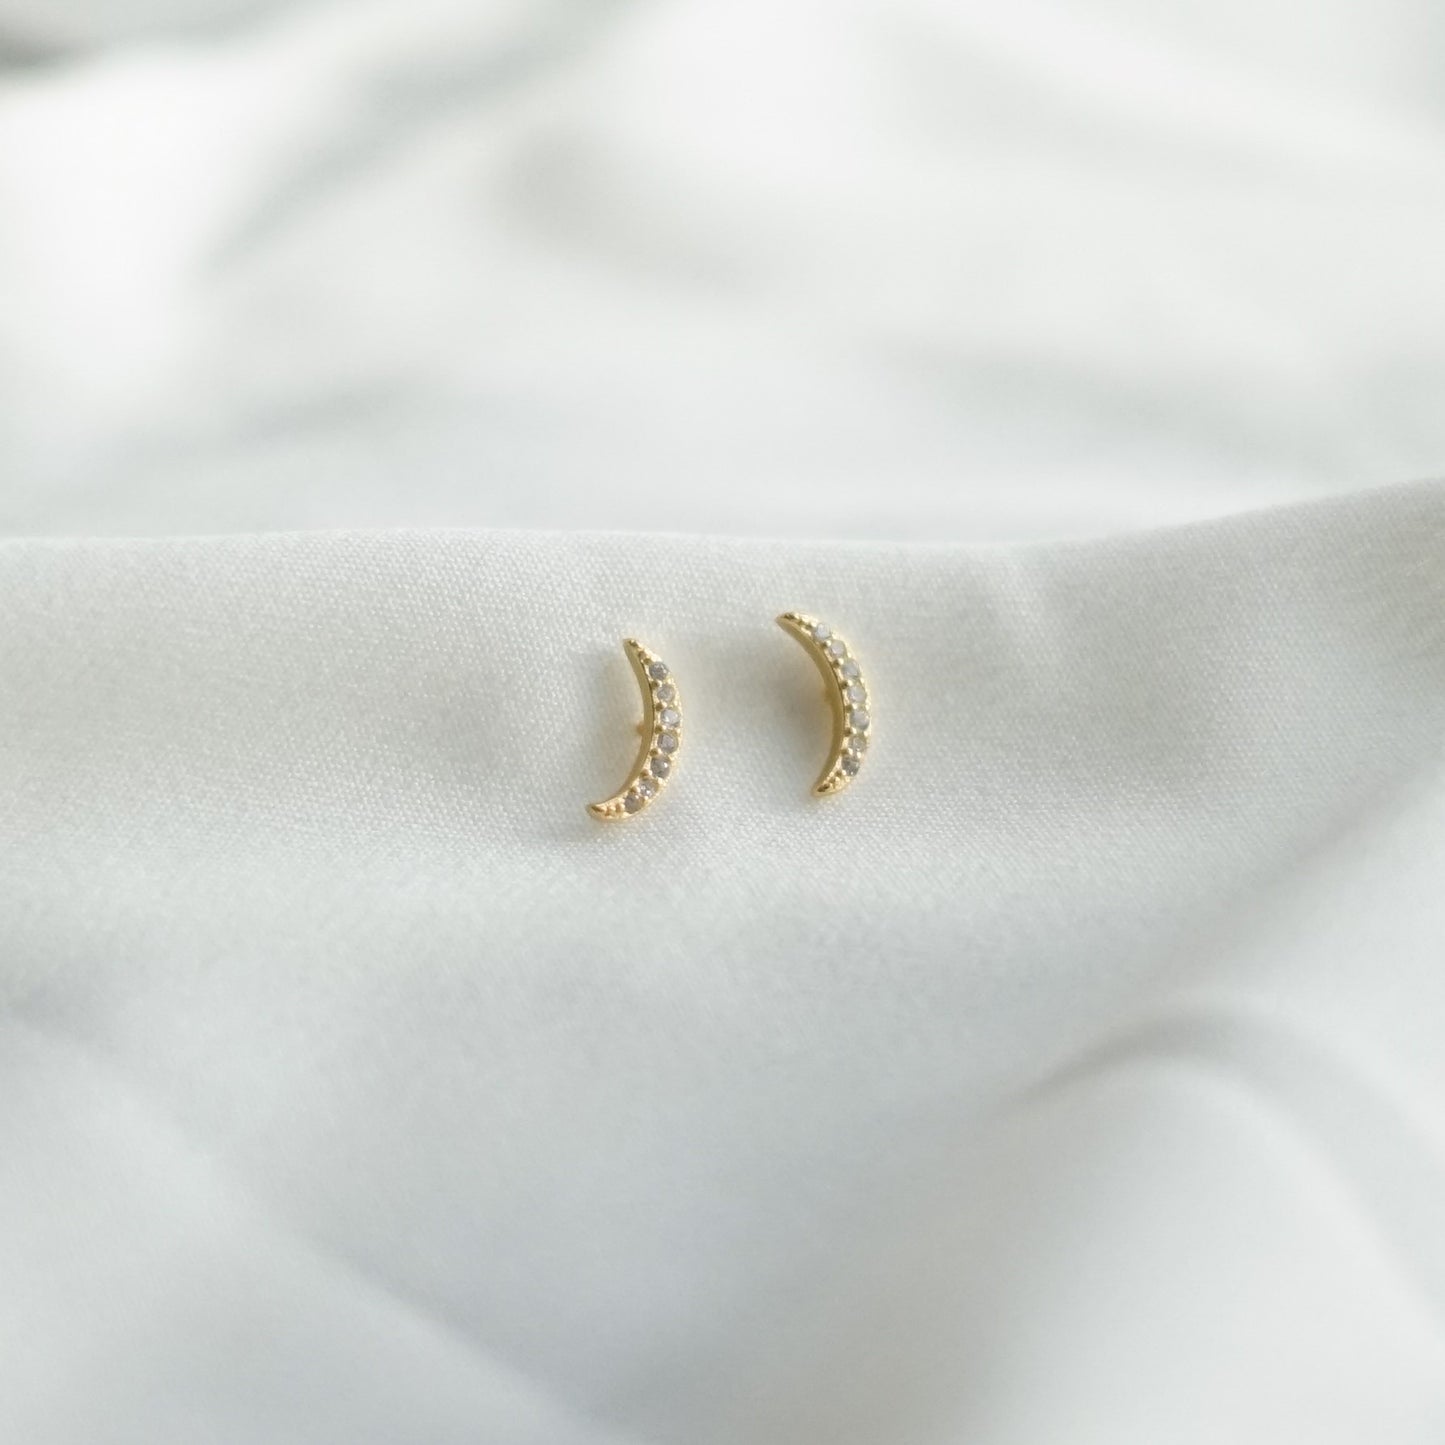 Mini Crescent Moon Gold Stud Earrings Abu Dhabi UAE